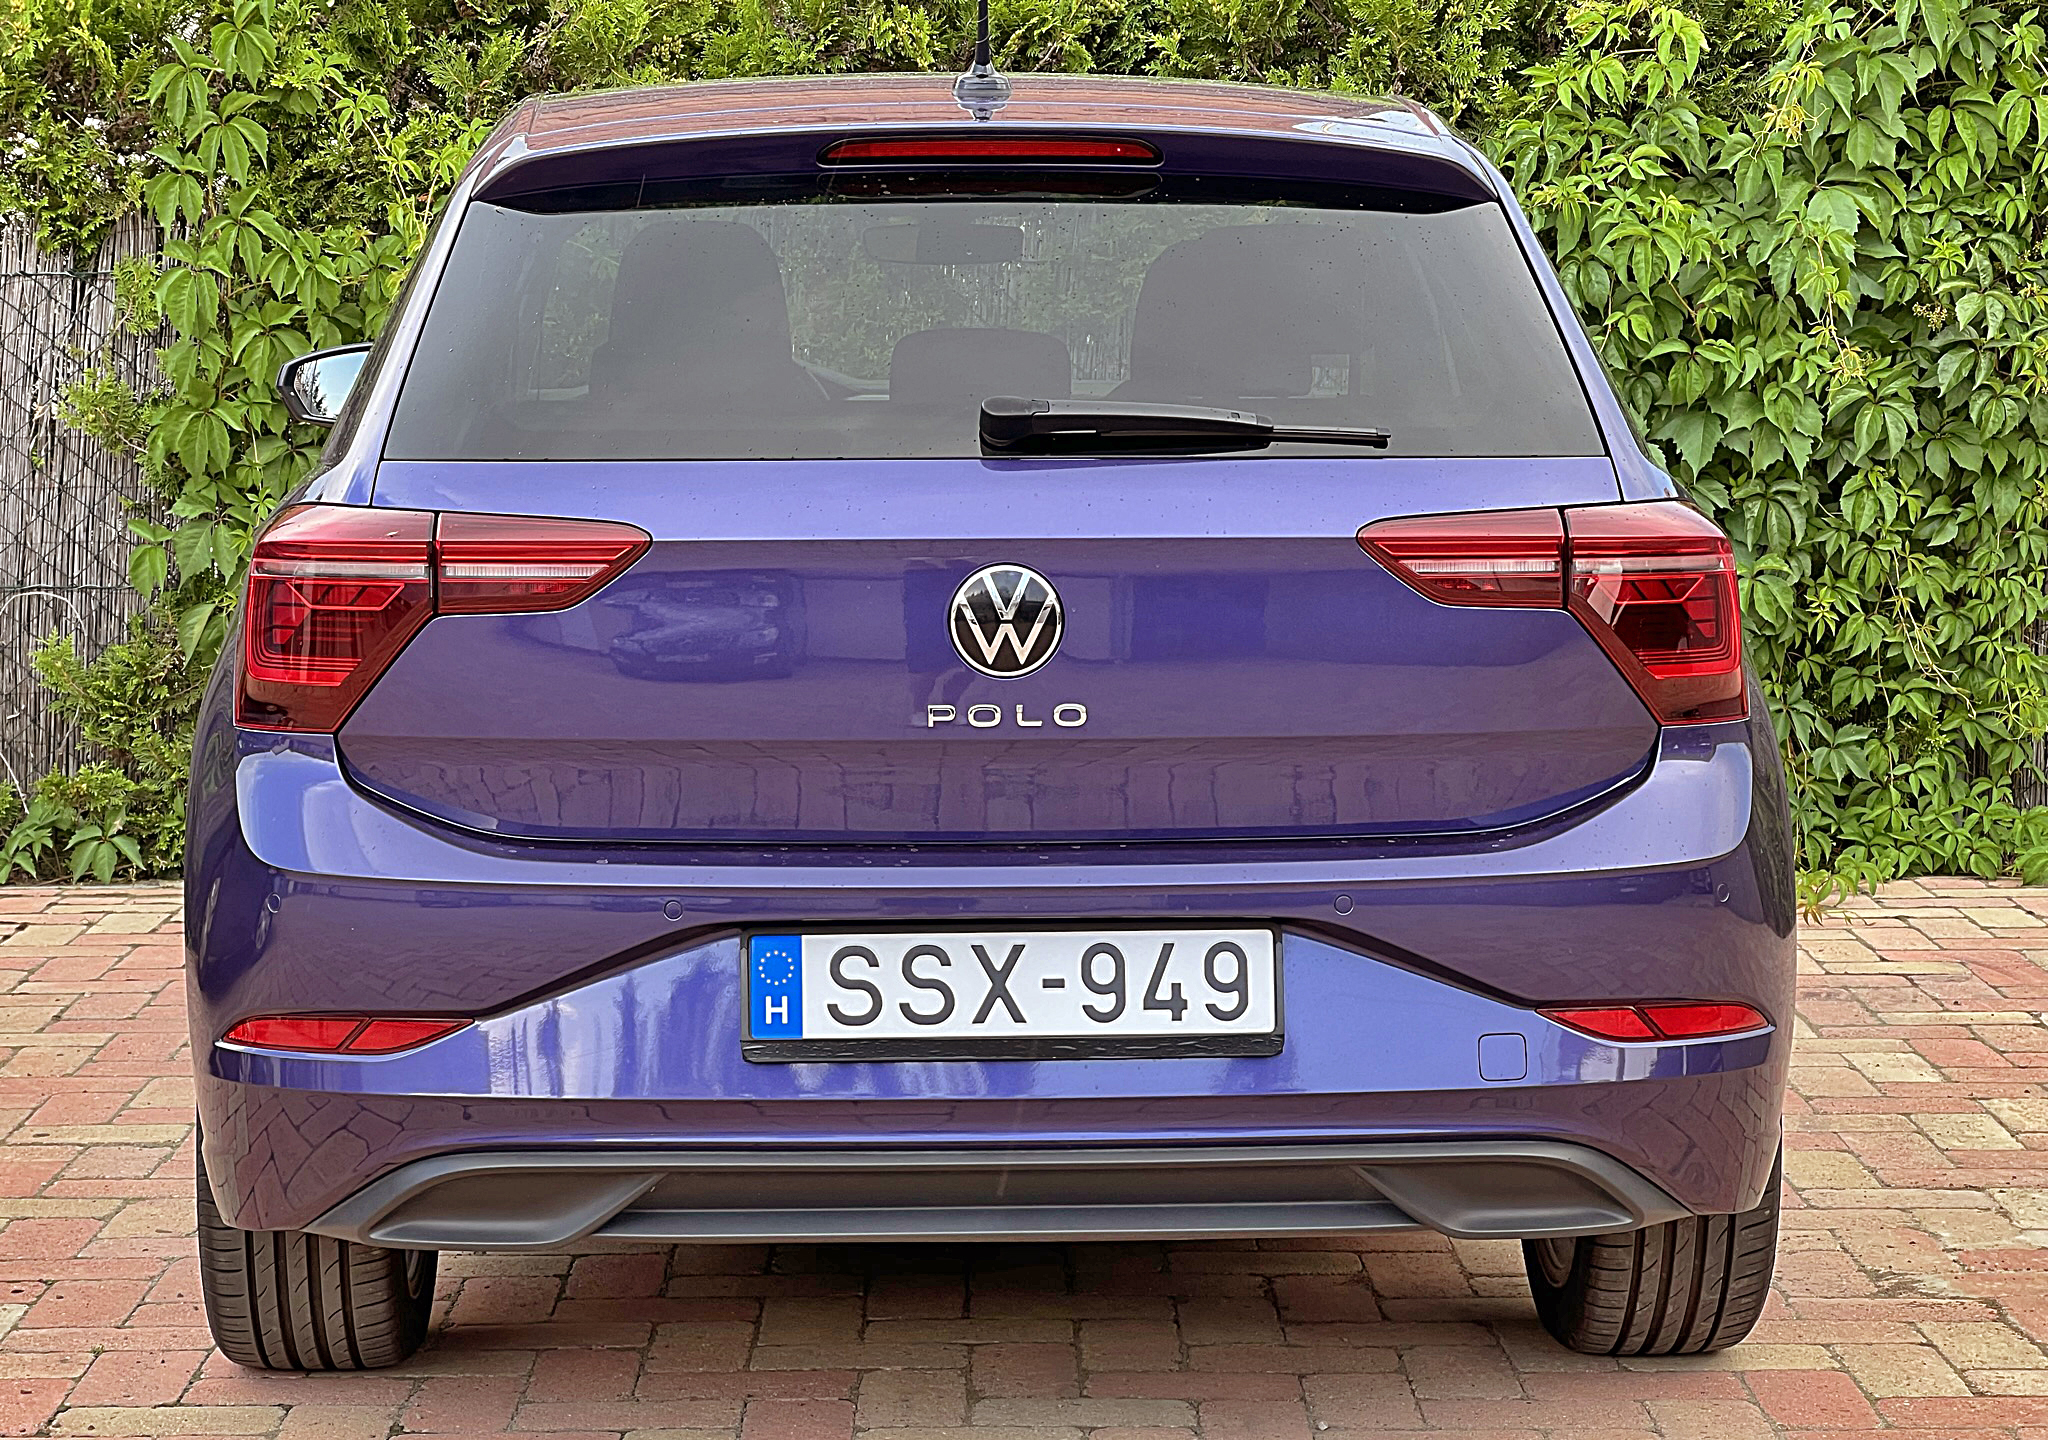 Látott már tízmilliós lila Volkswagen Polót? - Extra - Blikk